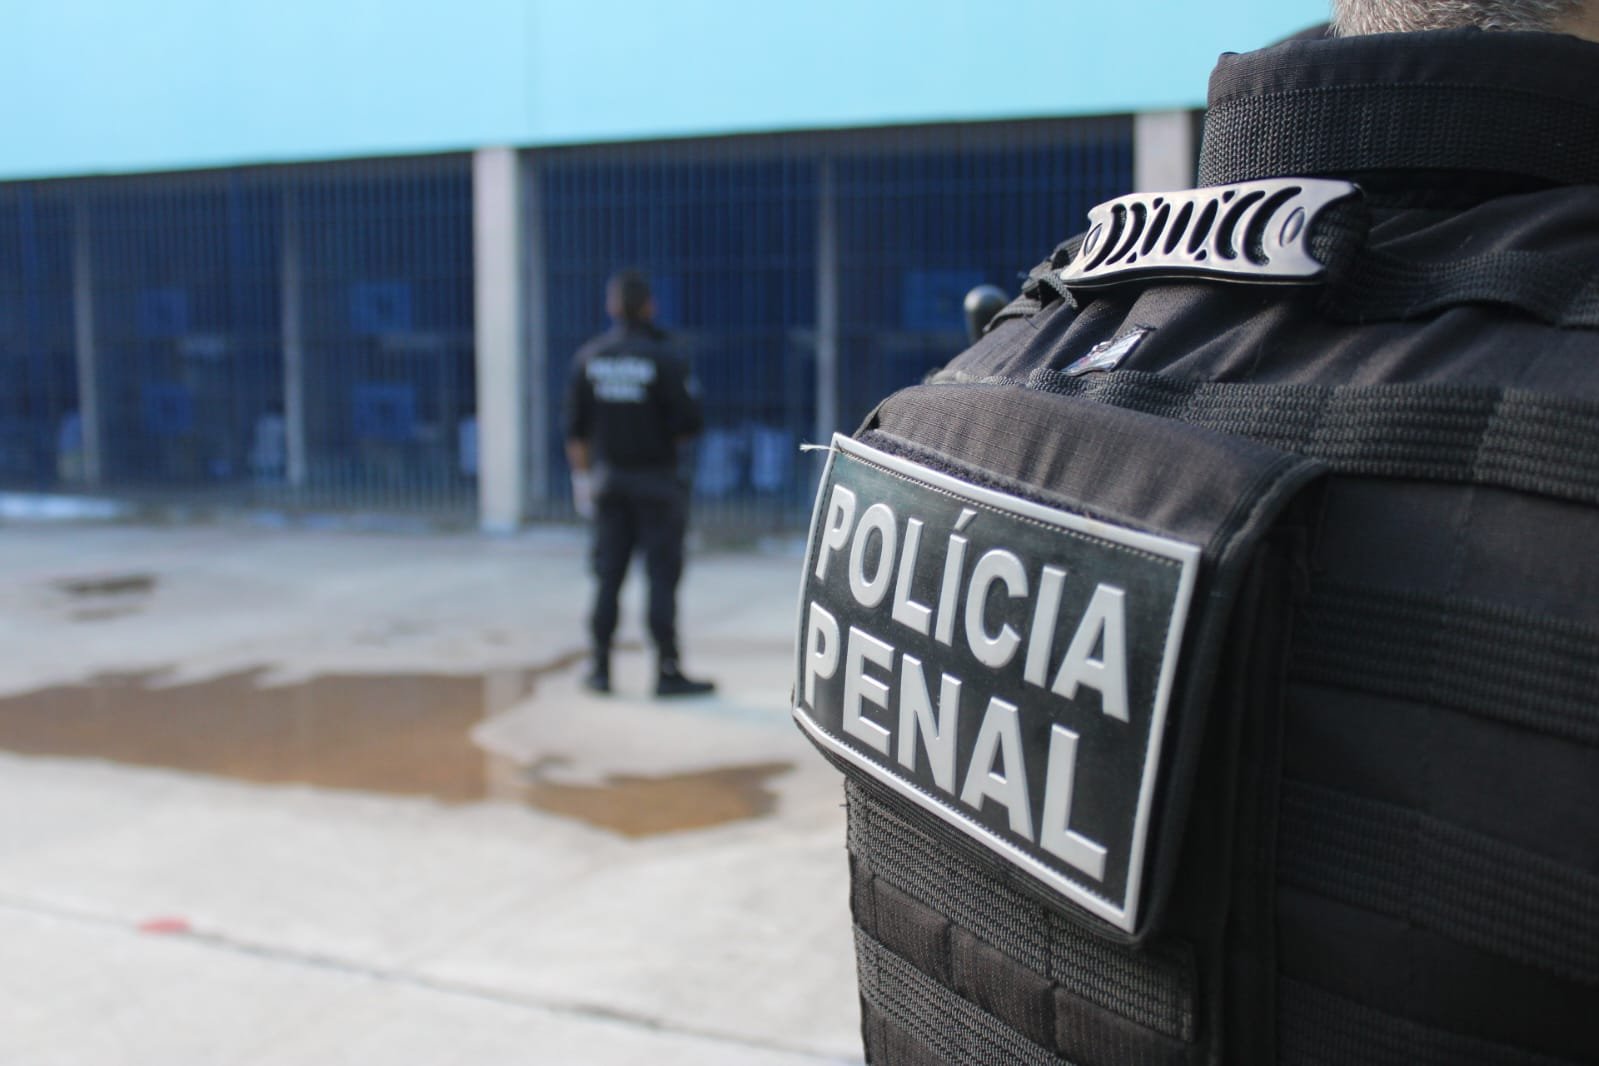 Piauí envia policiais penais para o Rio Grande do Norte